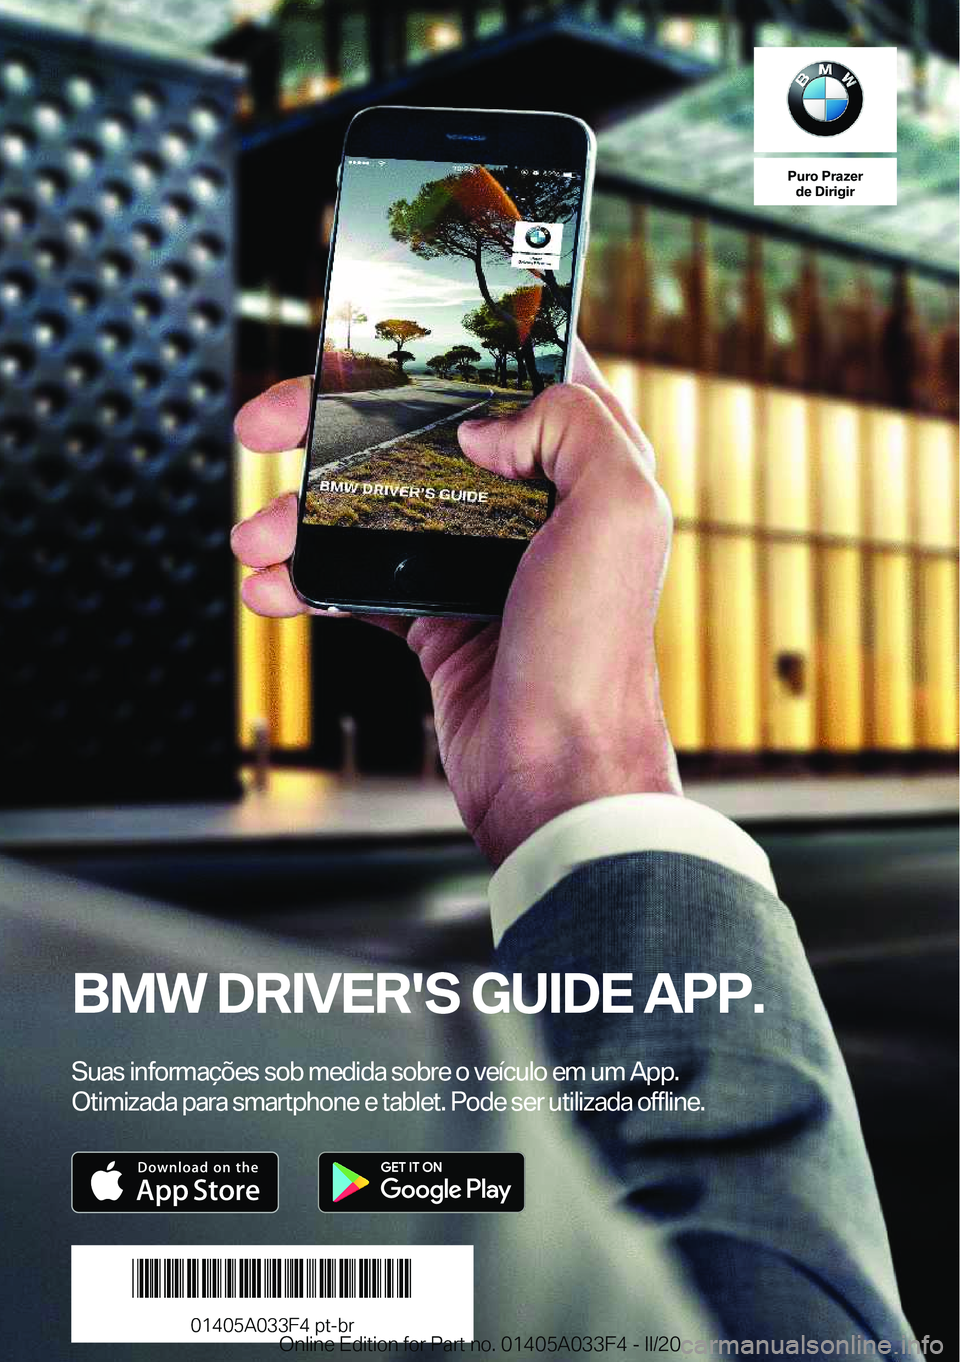 BMW X5 M 2020  Manual do condutor (in Portuguese) �P�u�r�o��P�r�a�z�e�r�d�e��D�i�r�i�g�i�r
�B�M�W��D�R�I�V�E�R�'�S��G�U�I�D�E��A�P�P�.
�S�u�a�s��i�n�f�o�r�m�a�